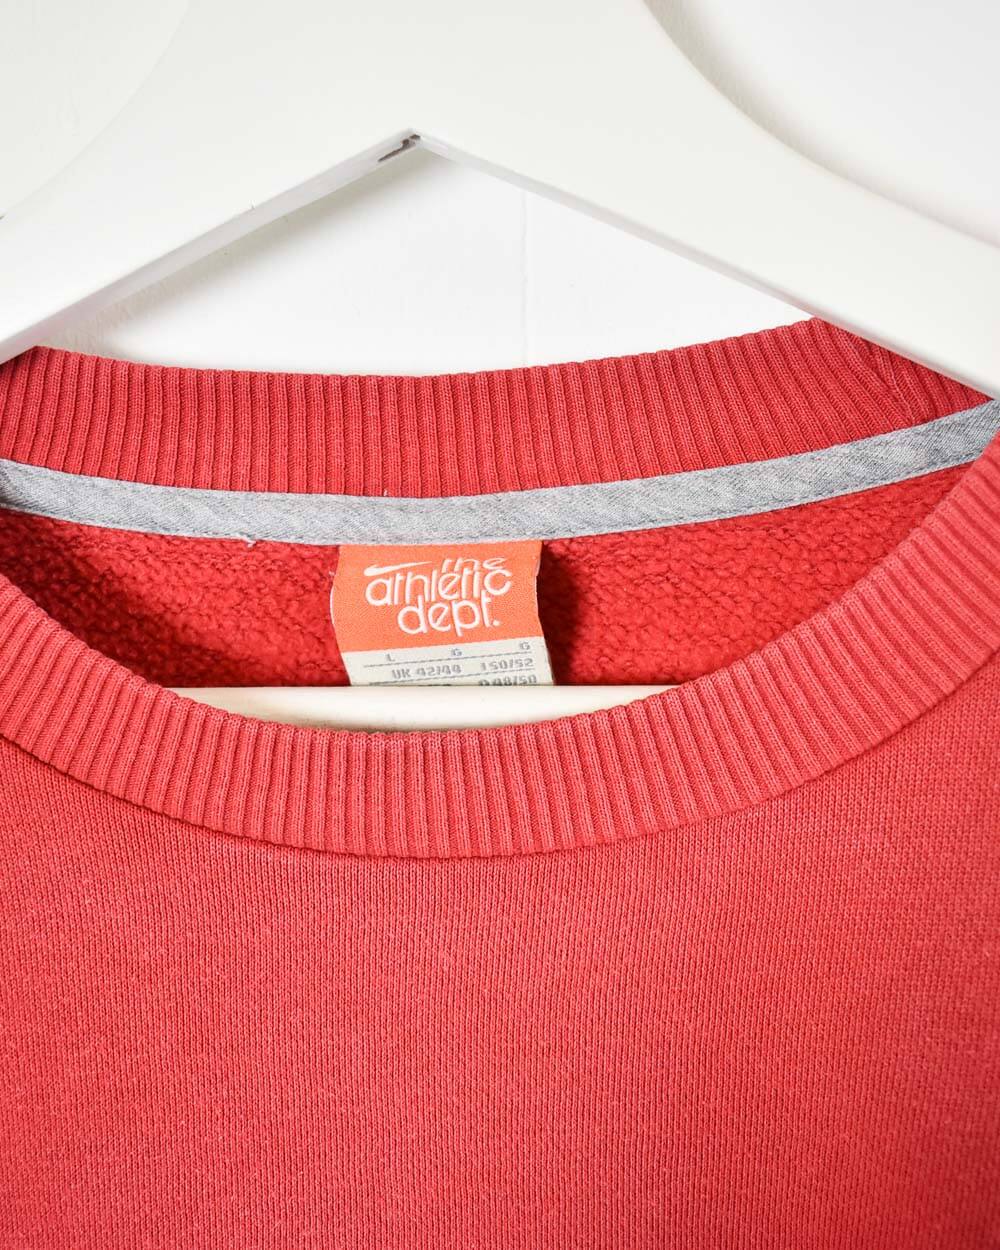 Red Nike Sweatshirt - Large